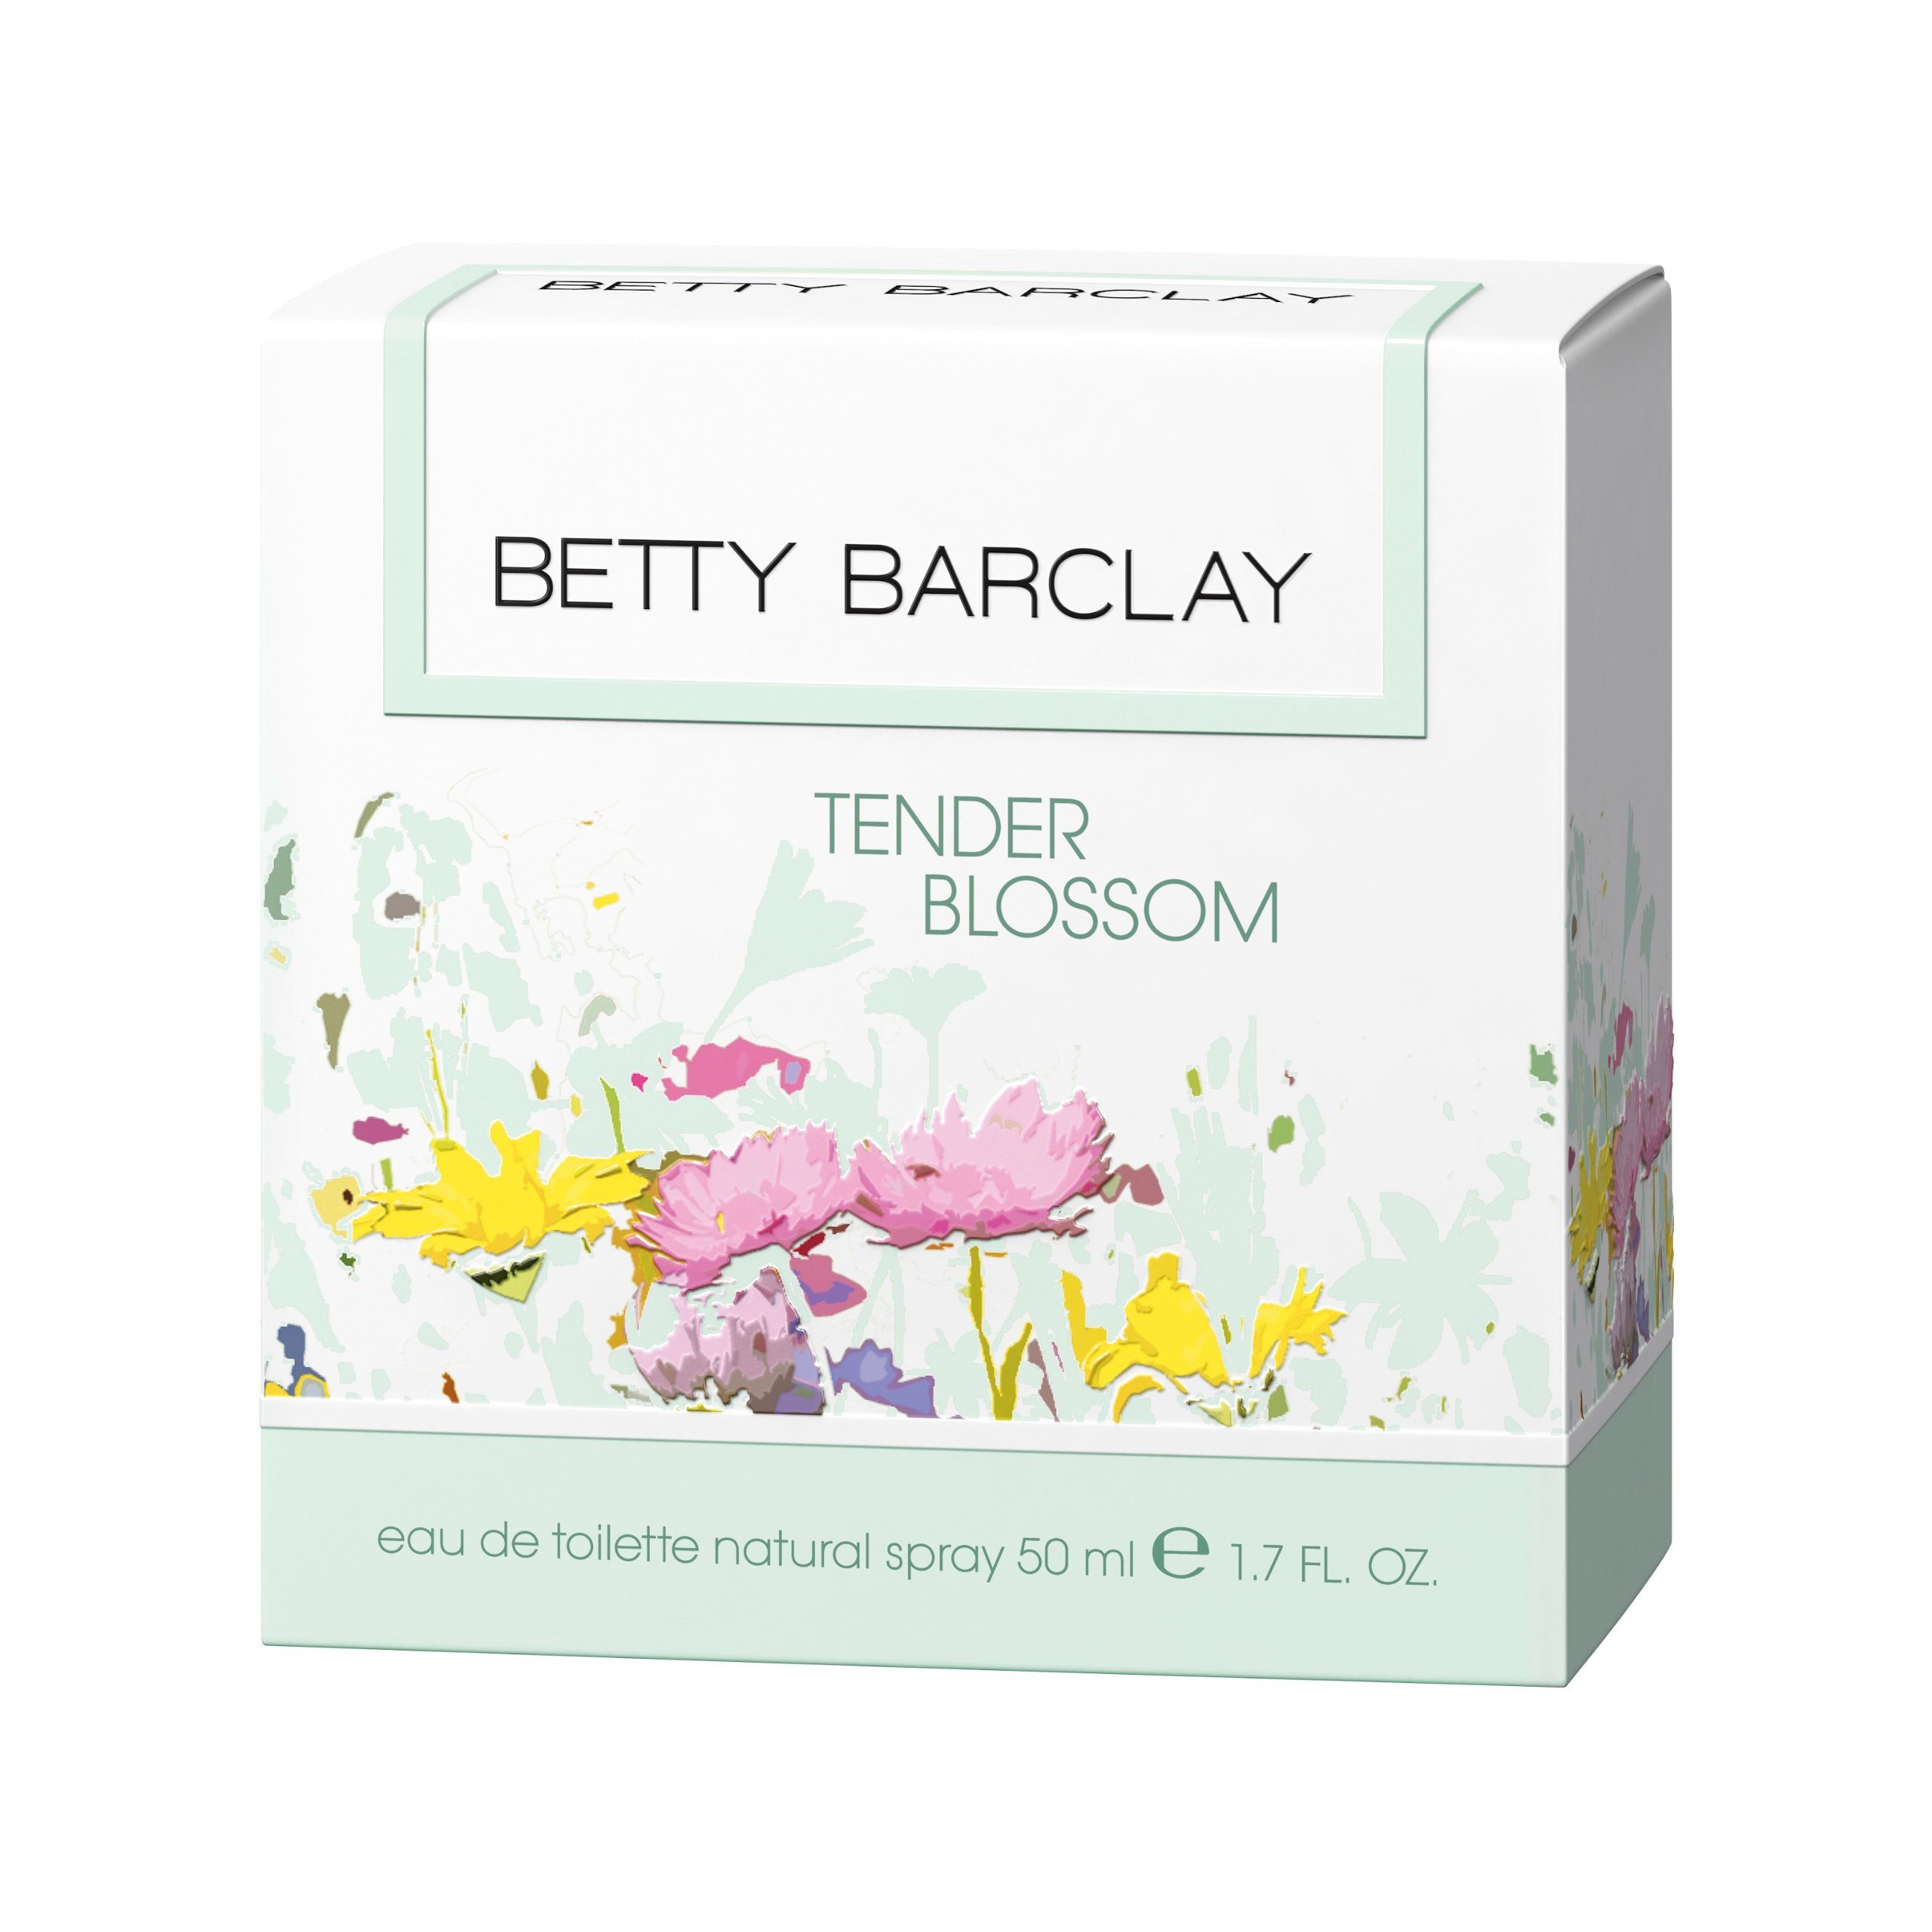 Betty Barclay Tender Toilette Blossom Barclay Toilette ml Eau 50 de Betty Eau de